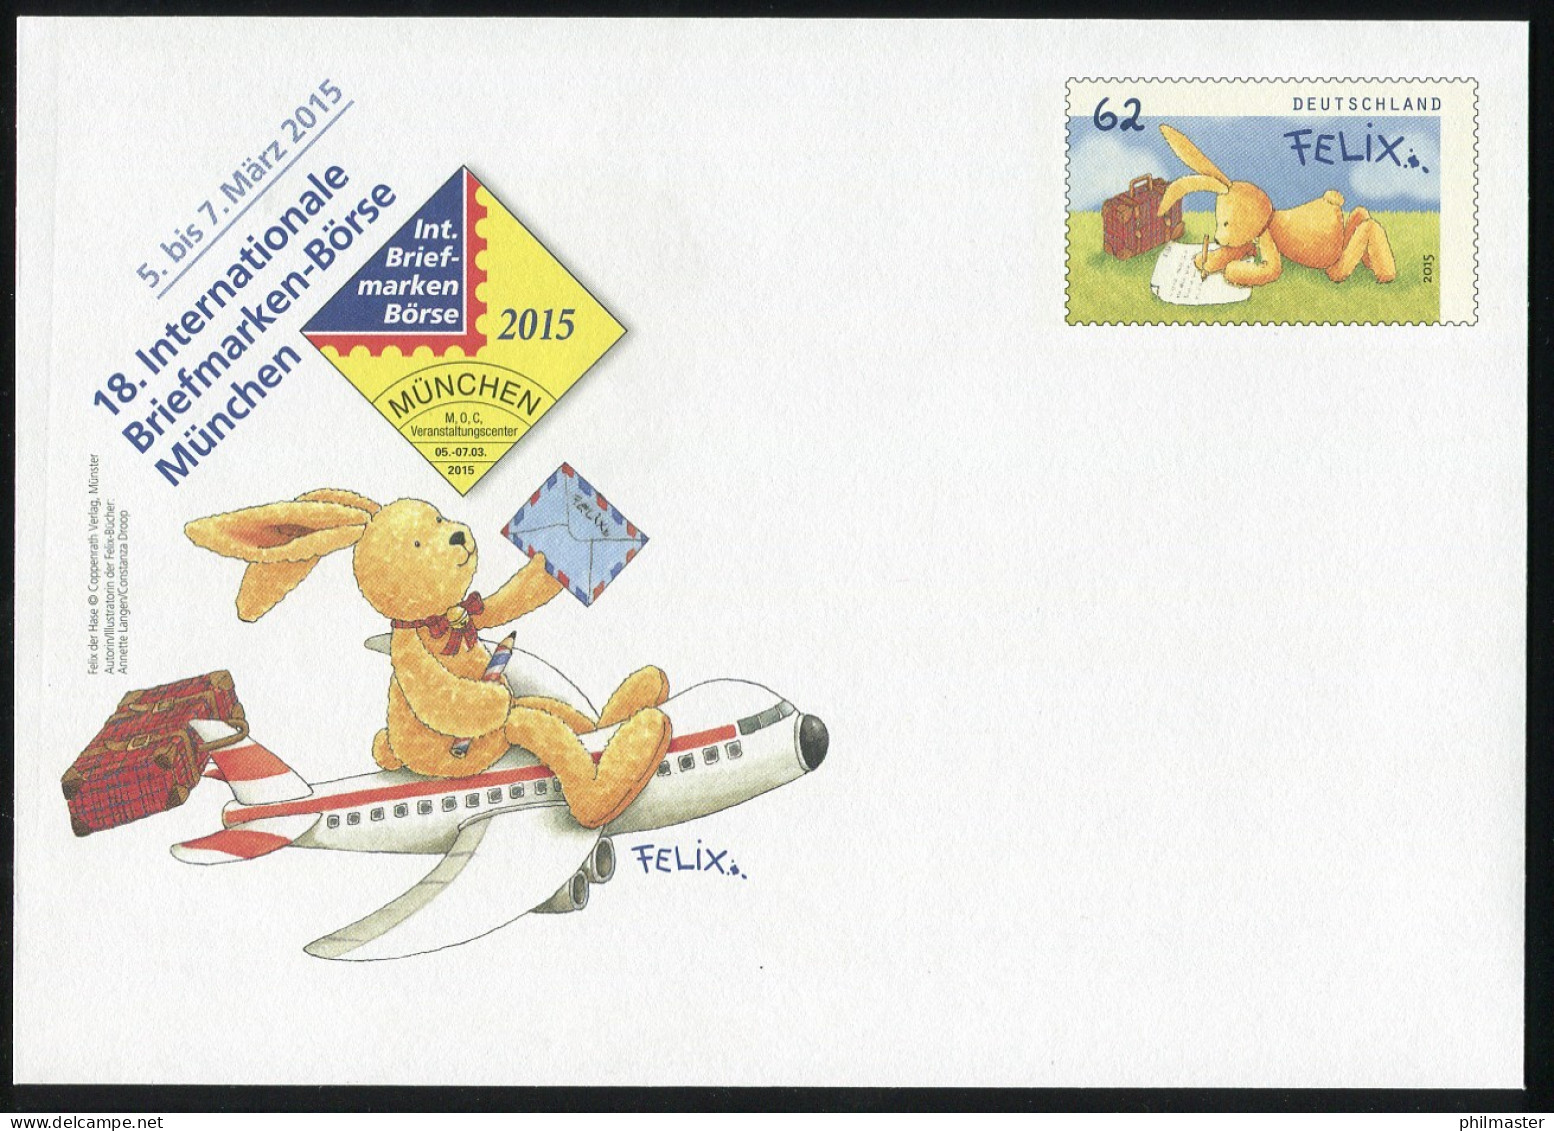 USo 356 Briefmarken-Messe München - Felix Der Hase 2015, ** - Enveloppes - Neuves